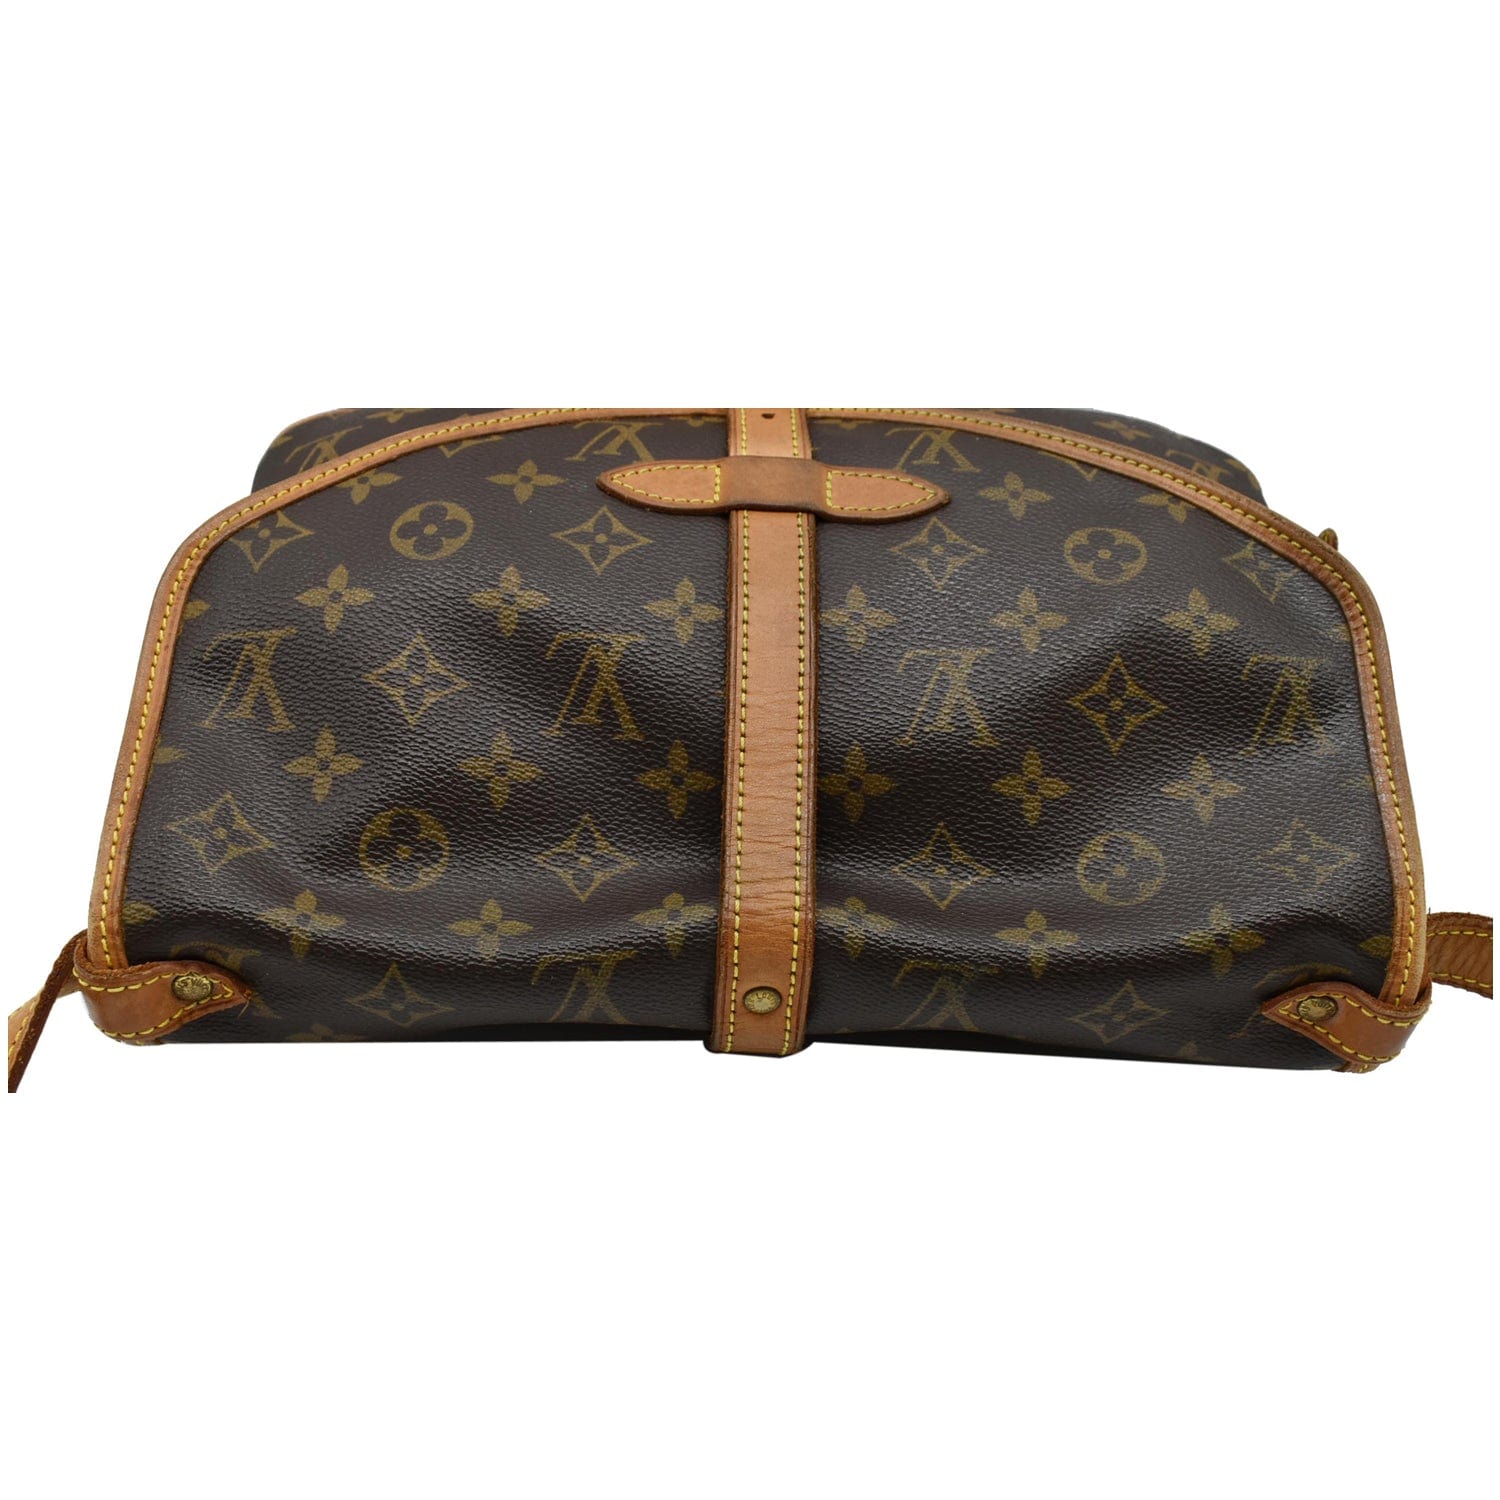 Saumur cloth handbag Louis Vuitton Brown in Cloth - 37062598